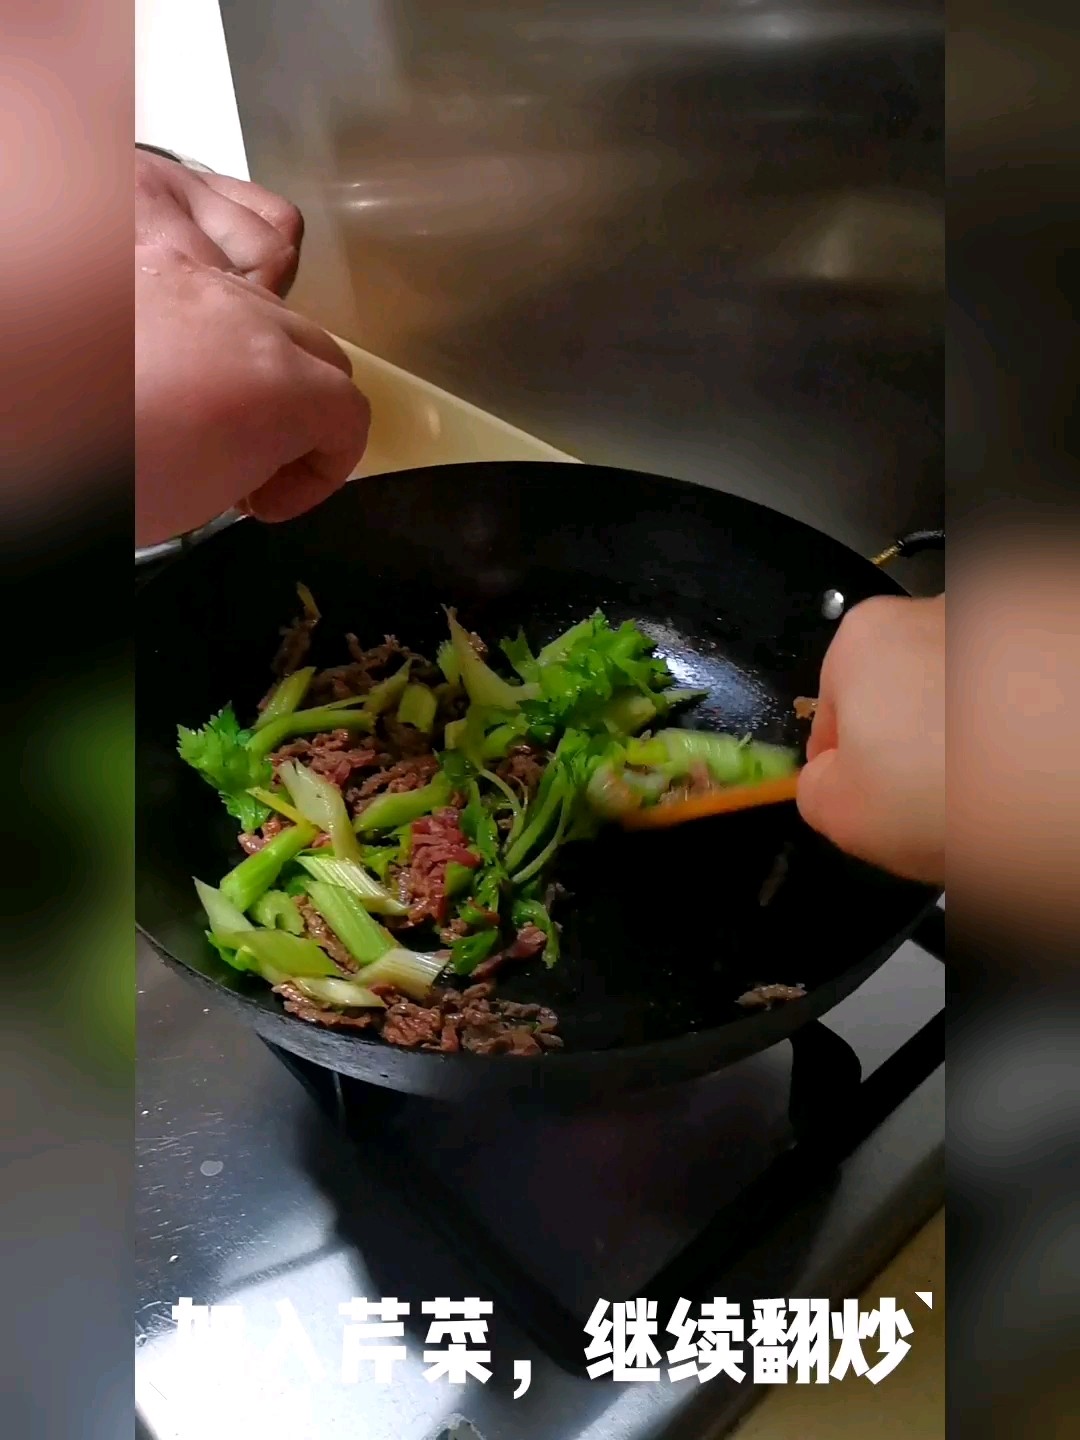 Stir-fried Shredded Beef with Celery recipe